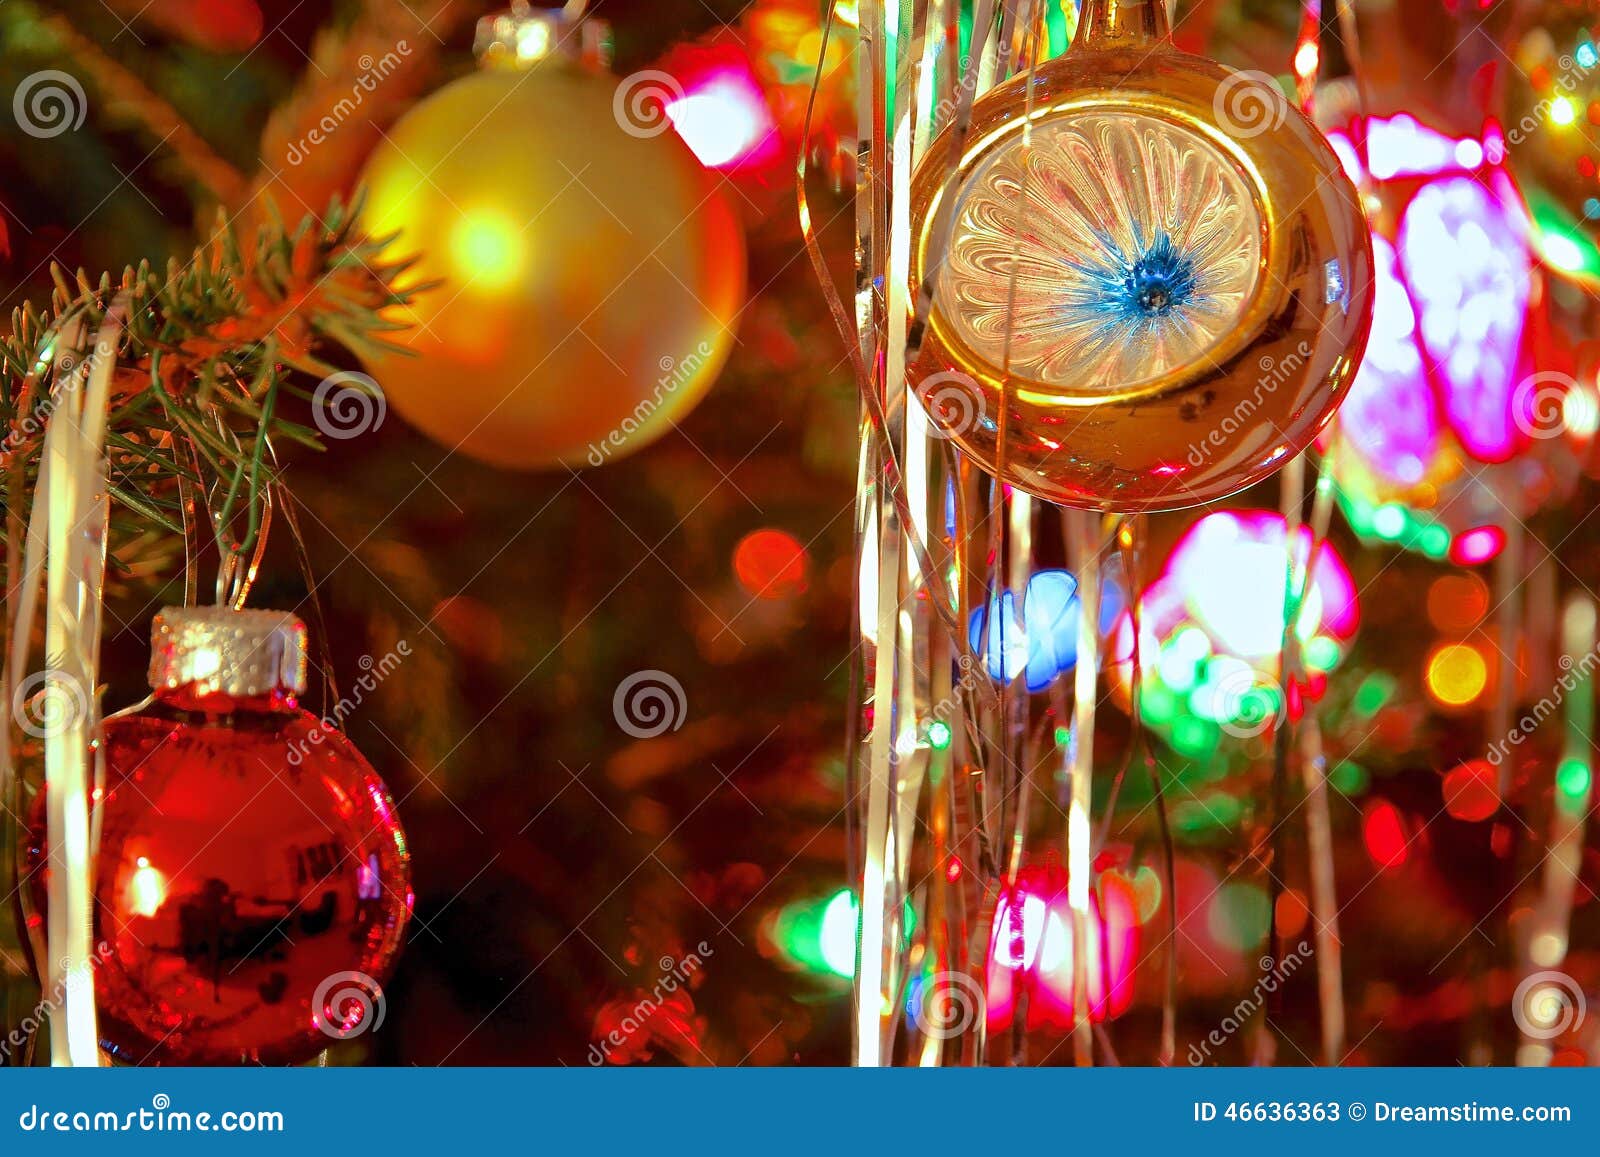 Decorazioni Natalizie Kitsch.Lo Stile Del Kitsch 70s Ha Decorato L Albero Di Natale Immagine Stock Immagine Di Lanterna Backgrounds 46636363